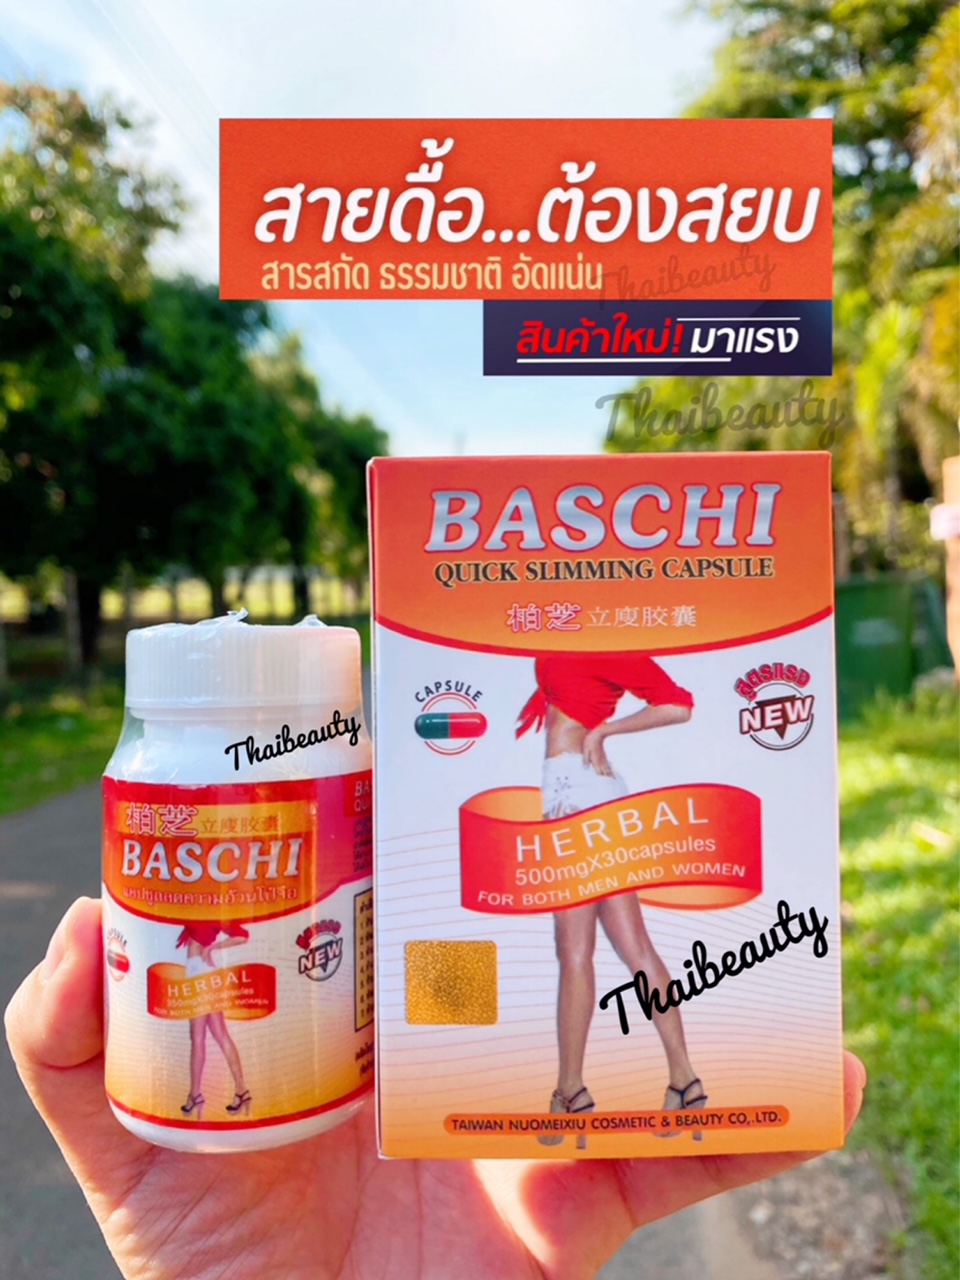 ✨สูตรใหม่เข้มข้น/อิ่มนาน✨อาหารเสริมลดน้ำหนัก บรรจุ 30 แคปซูล สูตรดื้อยา ลดสัดส่วน ลดพุง ( 1 กระปุก) Baschi อย.ไทย บาชิ พร้อมส่ง!!